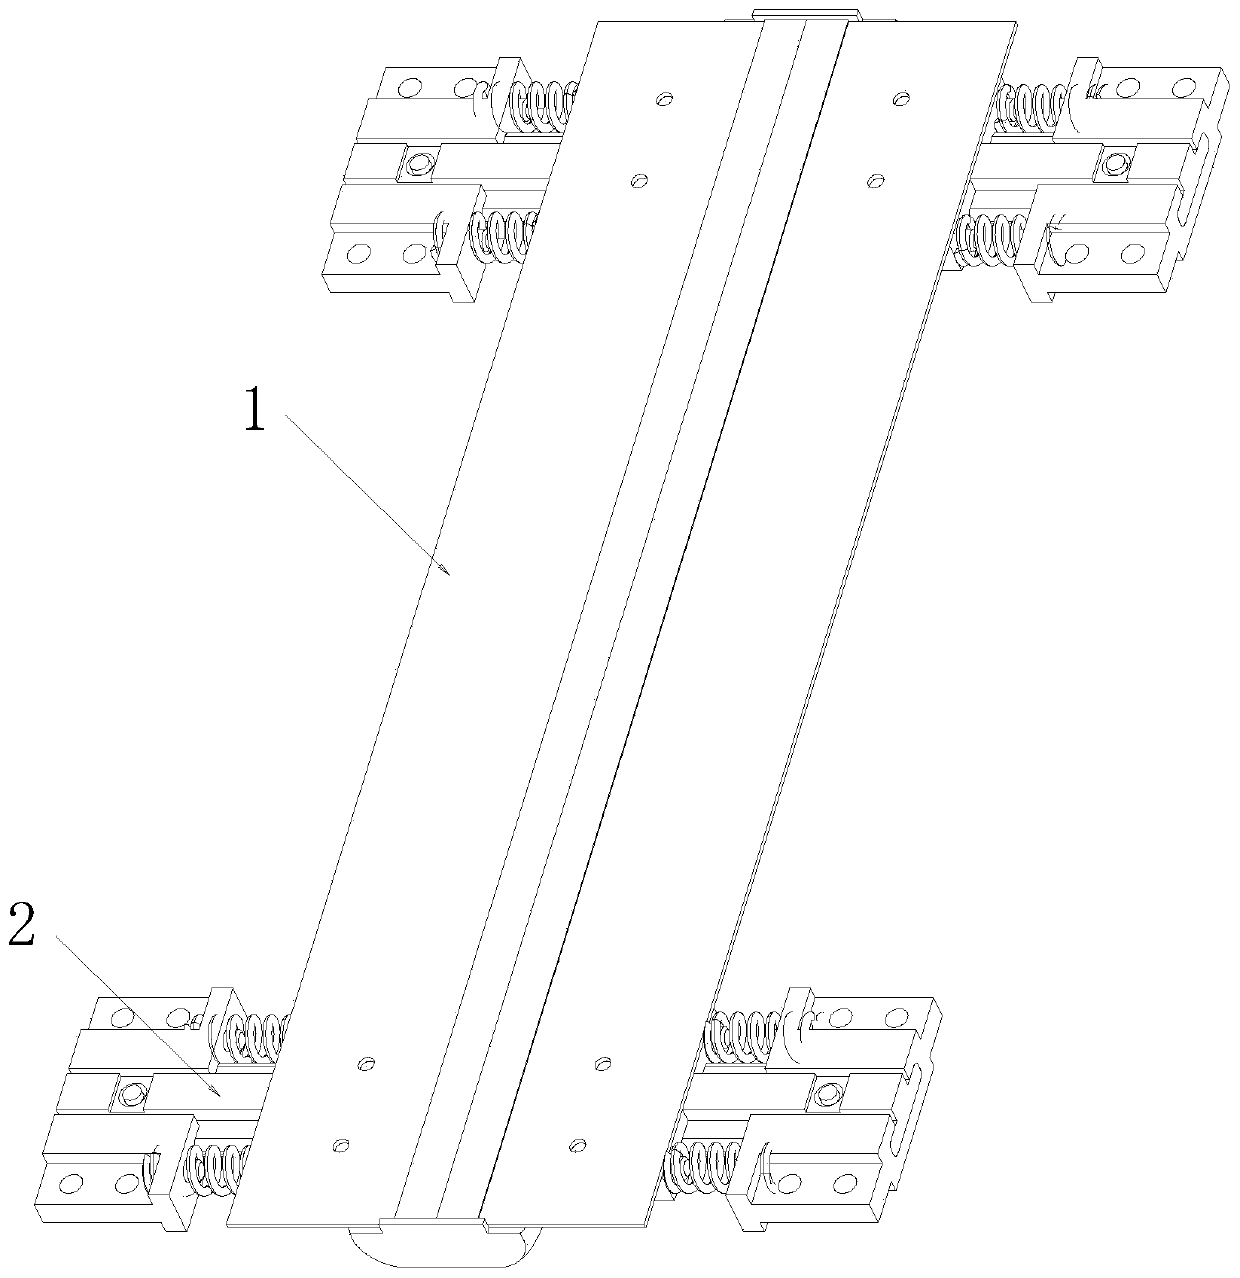 Wedge-shaped inward folding synchronous rotating mechanism